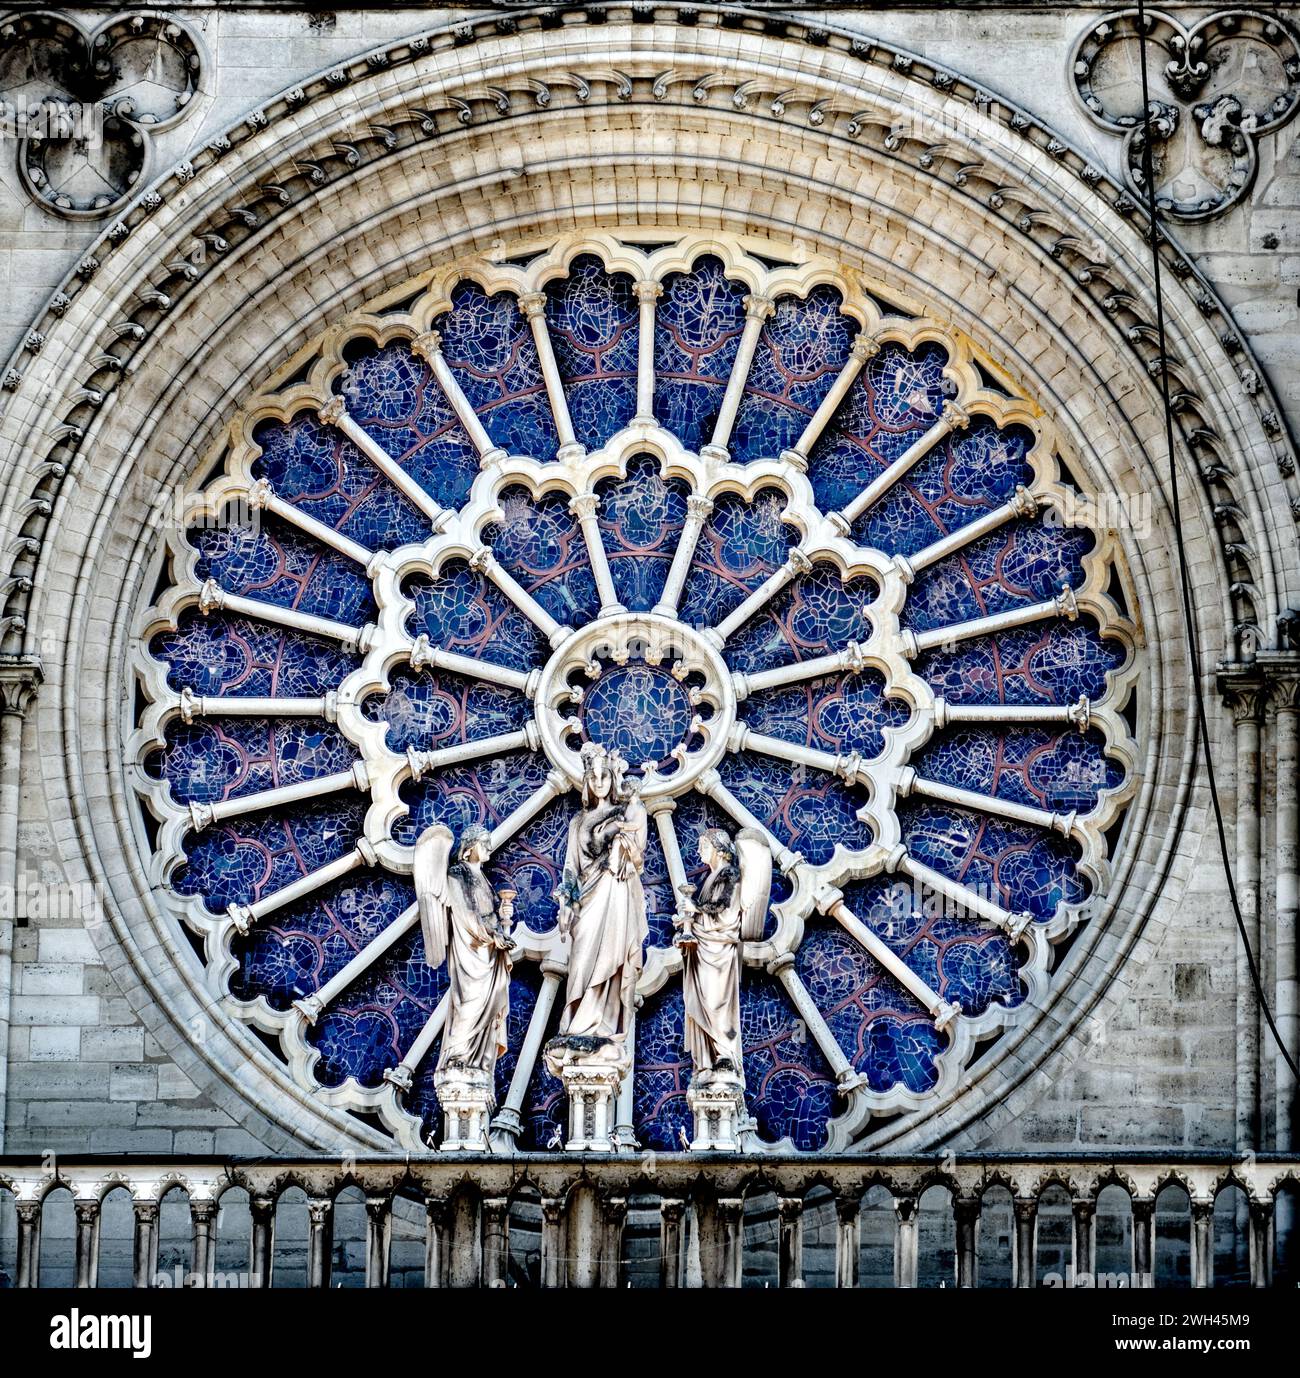 Nahaufnahme des Rosenfensters in der Kathedrale Notre Dame de Paris (unsere Lieben Frau von Paris), die nach einem verheerenden Brand vom 15. April 2019 repariert wird Stockfoto